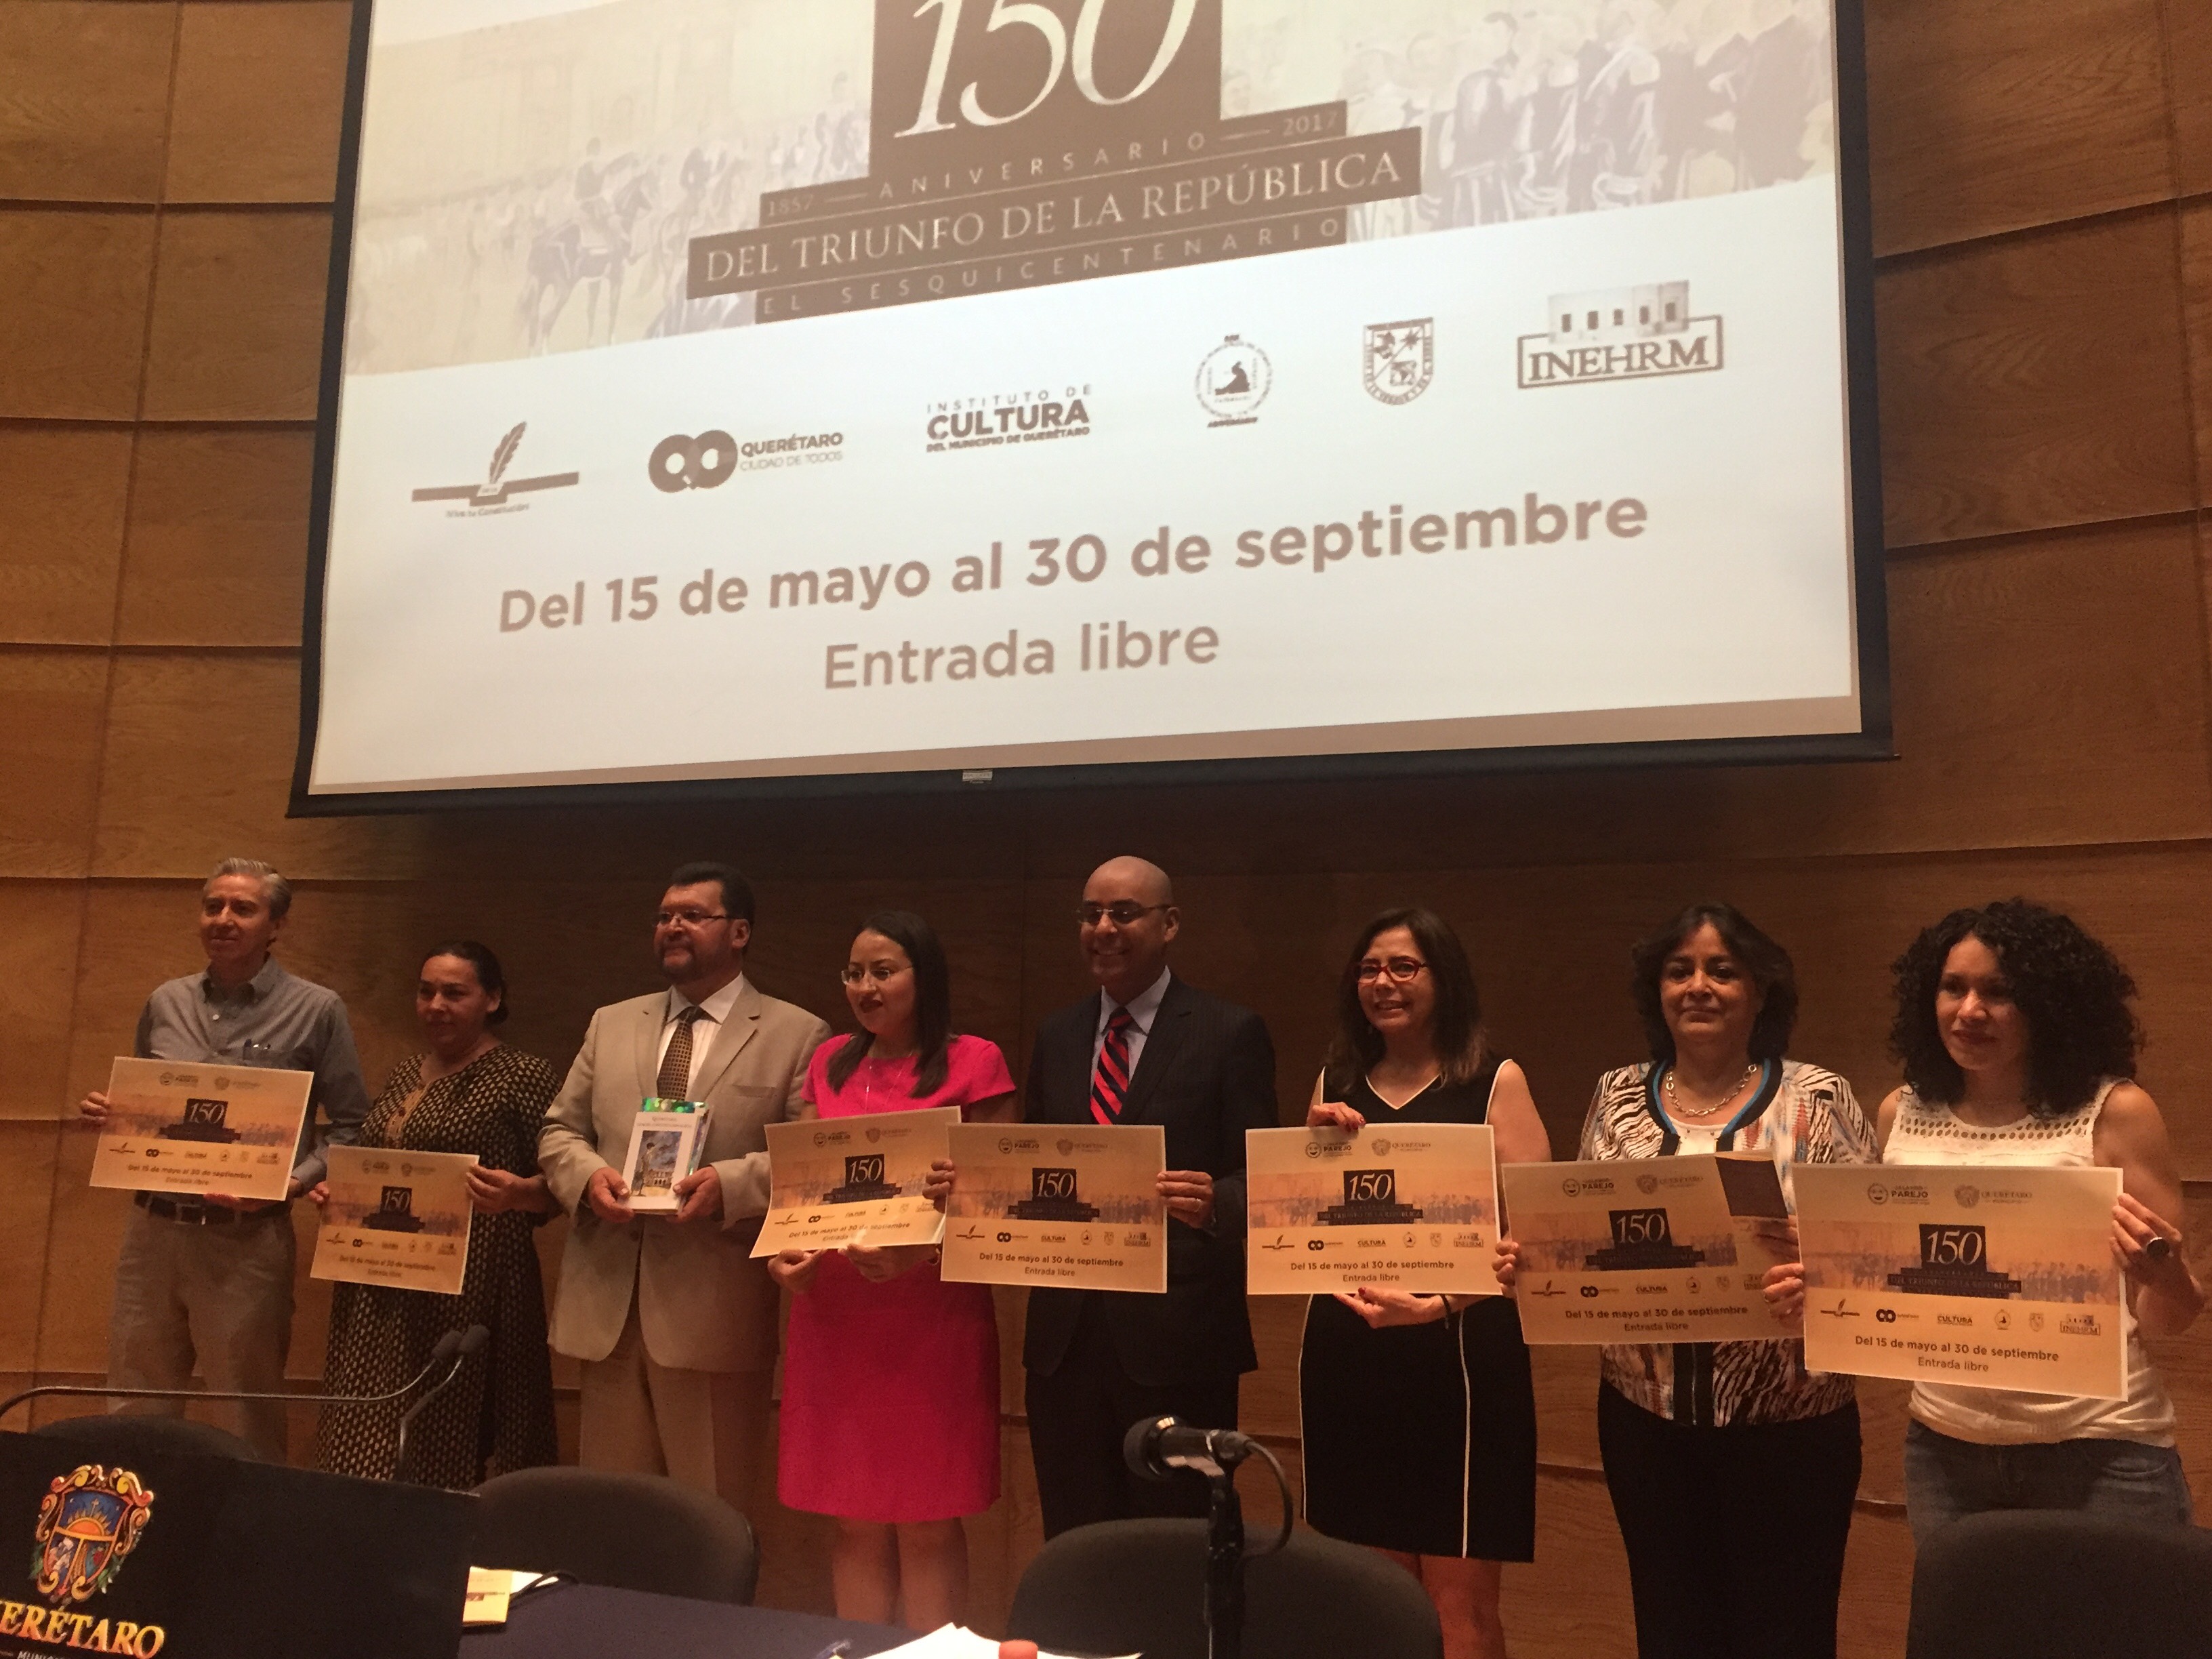  Municipio de Querétaro presenta programa para conmemorar 150 años del triunfo de la República